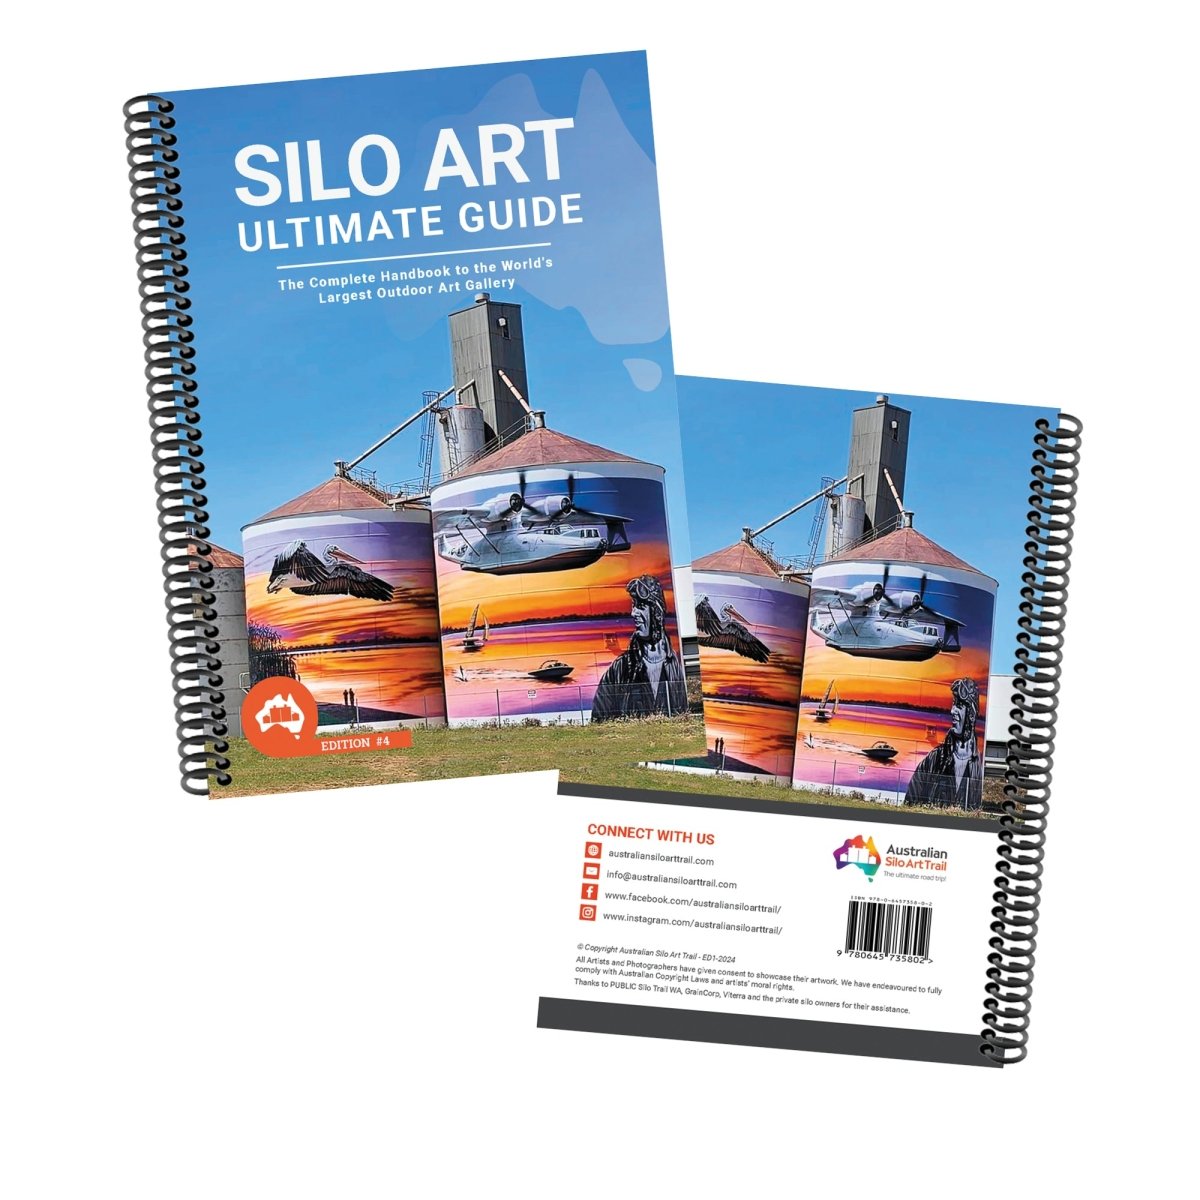 Australian Silo Art Trail - The Ultimate Guide | 4th Edition | Australian Silo Art Trail | A247 Gear